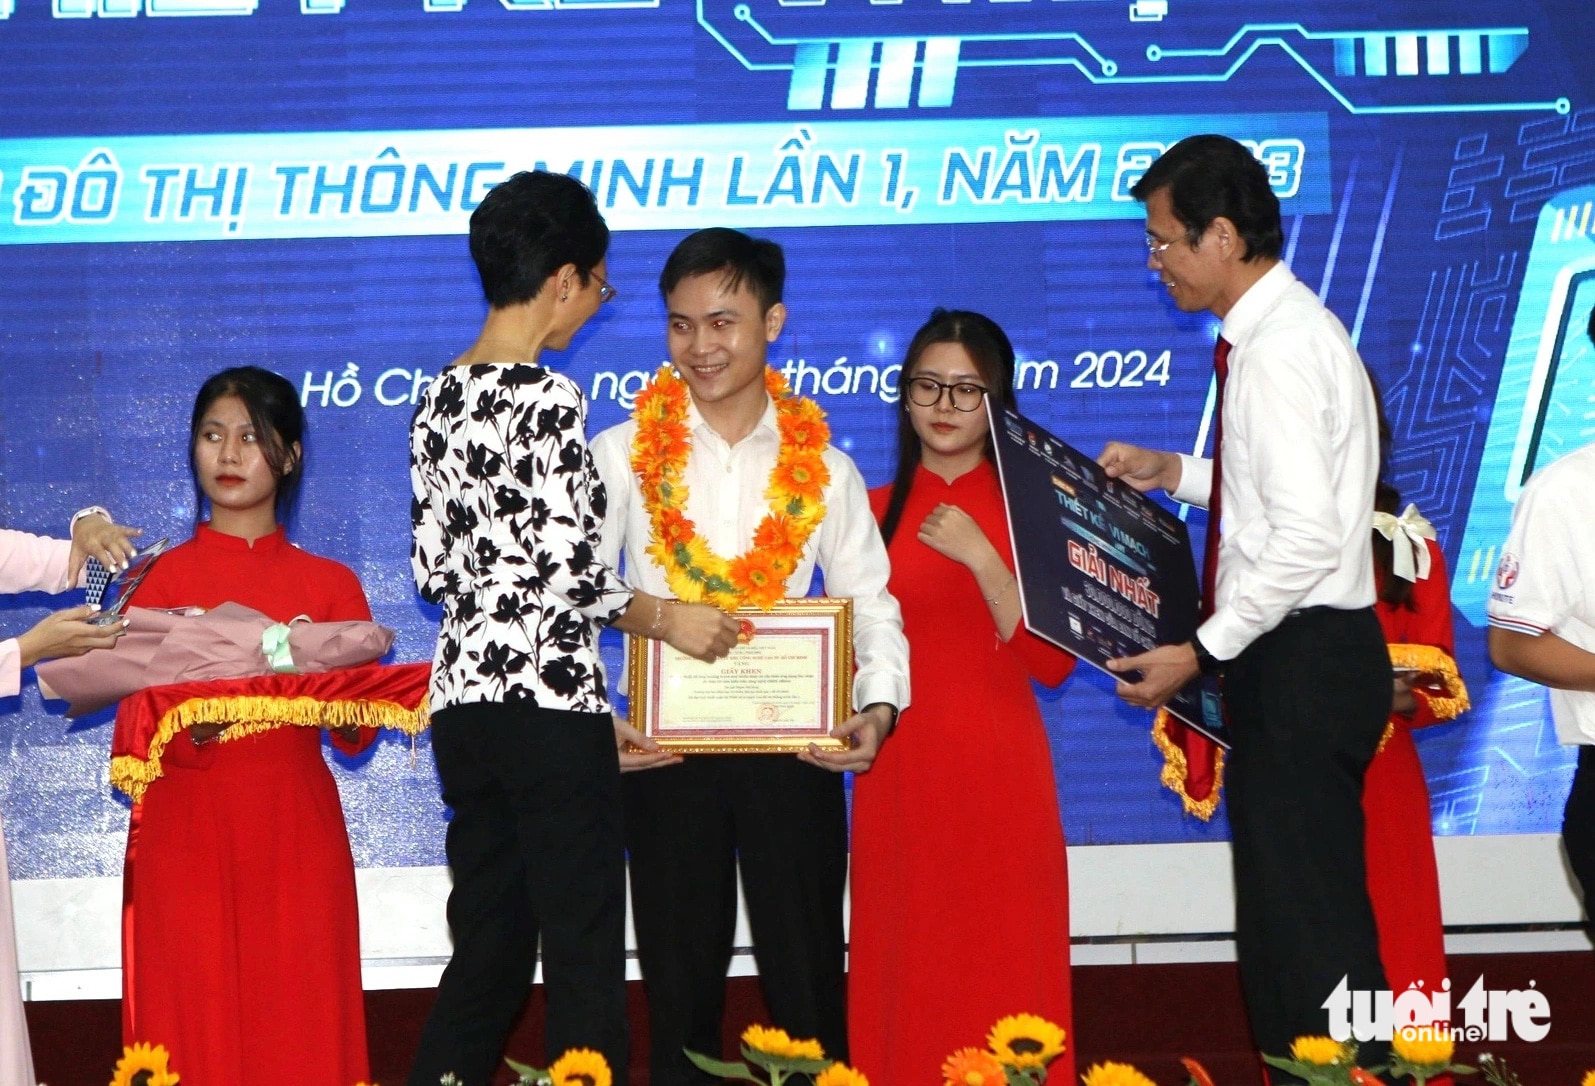 Sinh viên Phạm Thế Hùng (Trường đại học Khoa học tự nhiên - Đại học Quốc gia TP.HCM) giành giải nhất cuộc thi Thiết kế vi mạch cho đô thị thông minh lần 1 - năm 2024 - Ảnh: C.T.